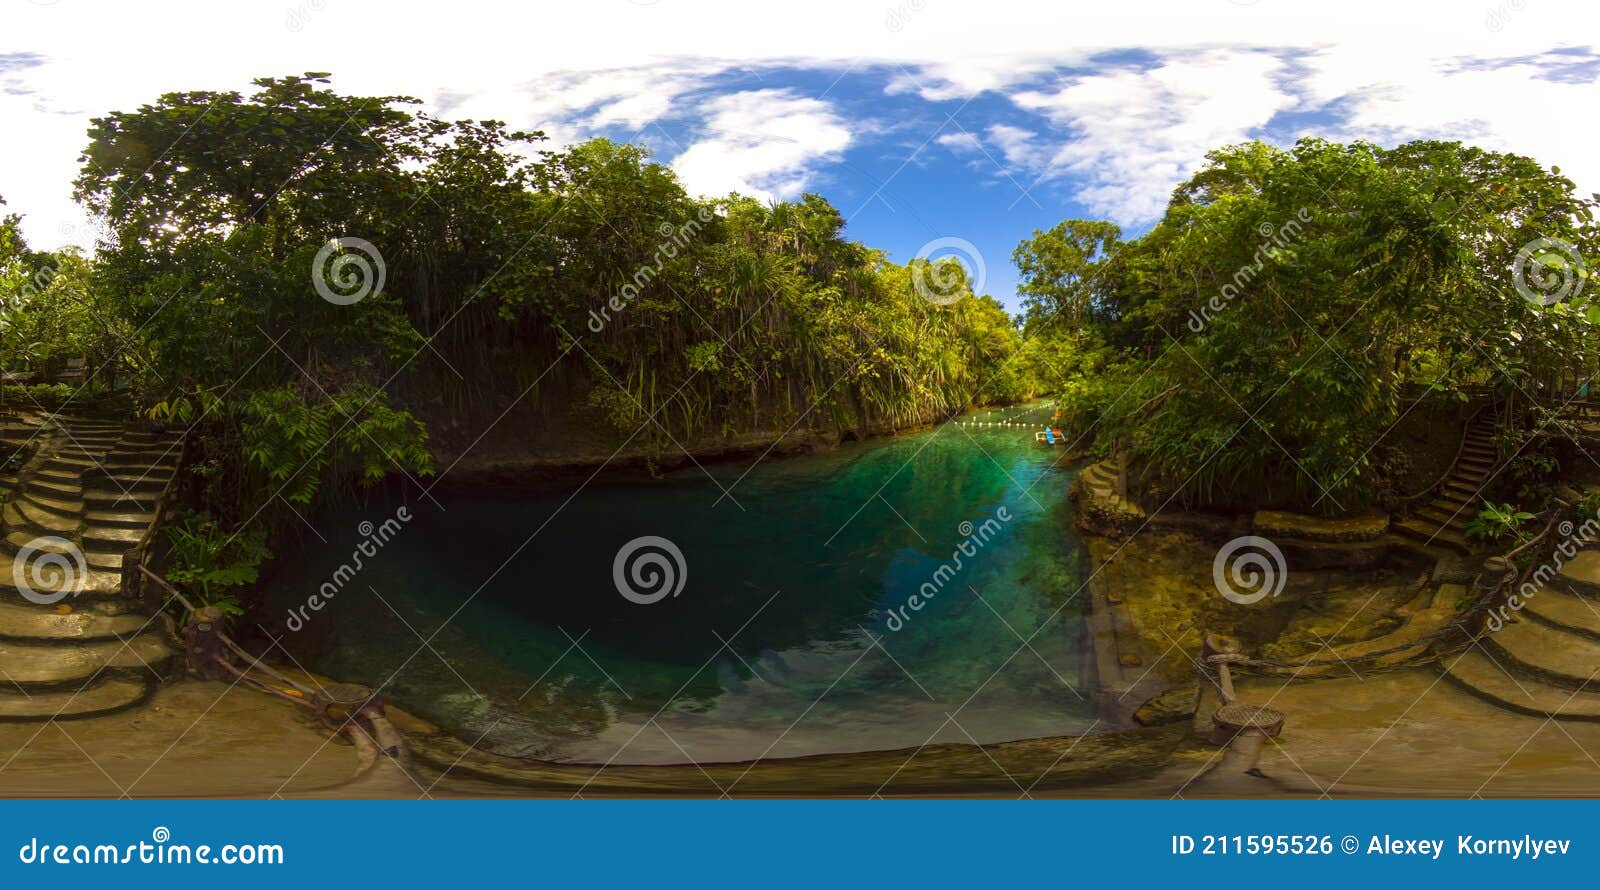 enchanted river in hinatuan, surigao del sur, philippines. 360-degree view